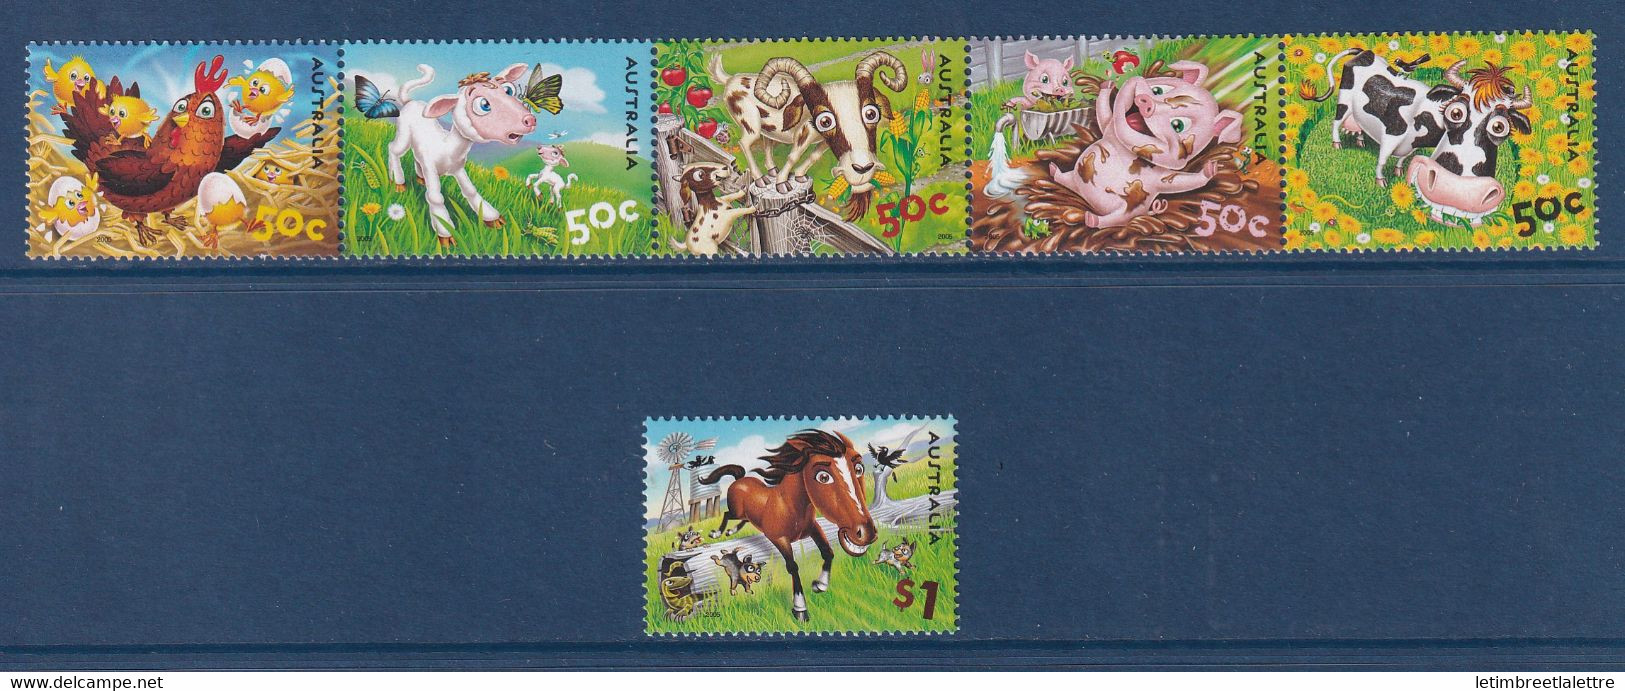 Australie - YT N° 2379 à 2384 ** - Neuf Sans Charnière - 2005 - Mint Stamps